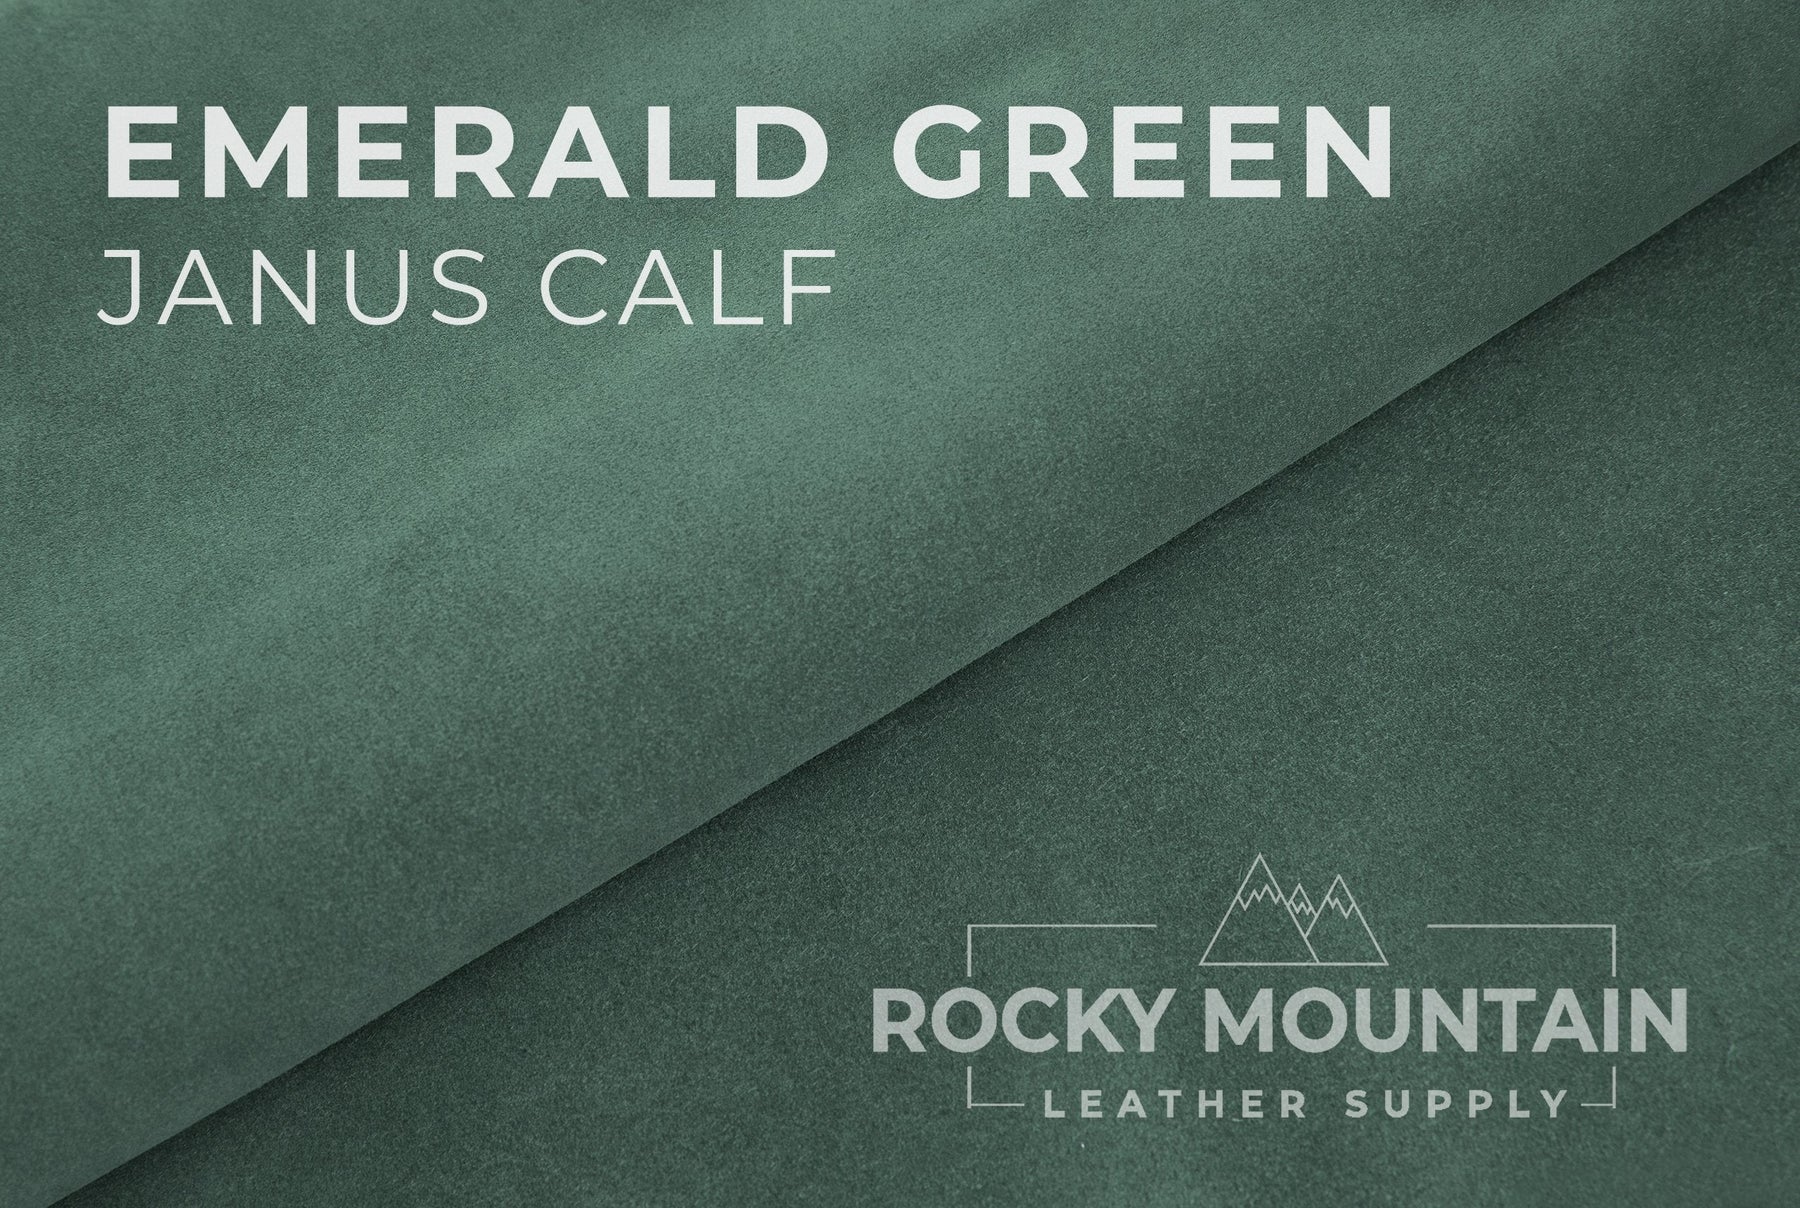 CF Stead 🇬🇧 - Janus Calf Suede -  Luxury Suede Leather (HIDES)